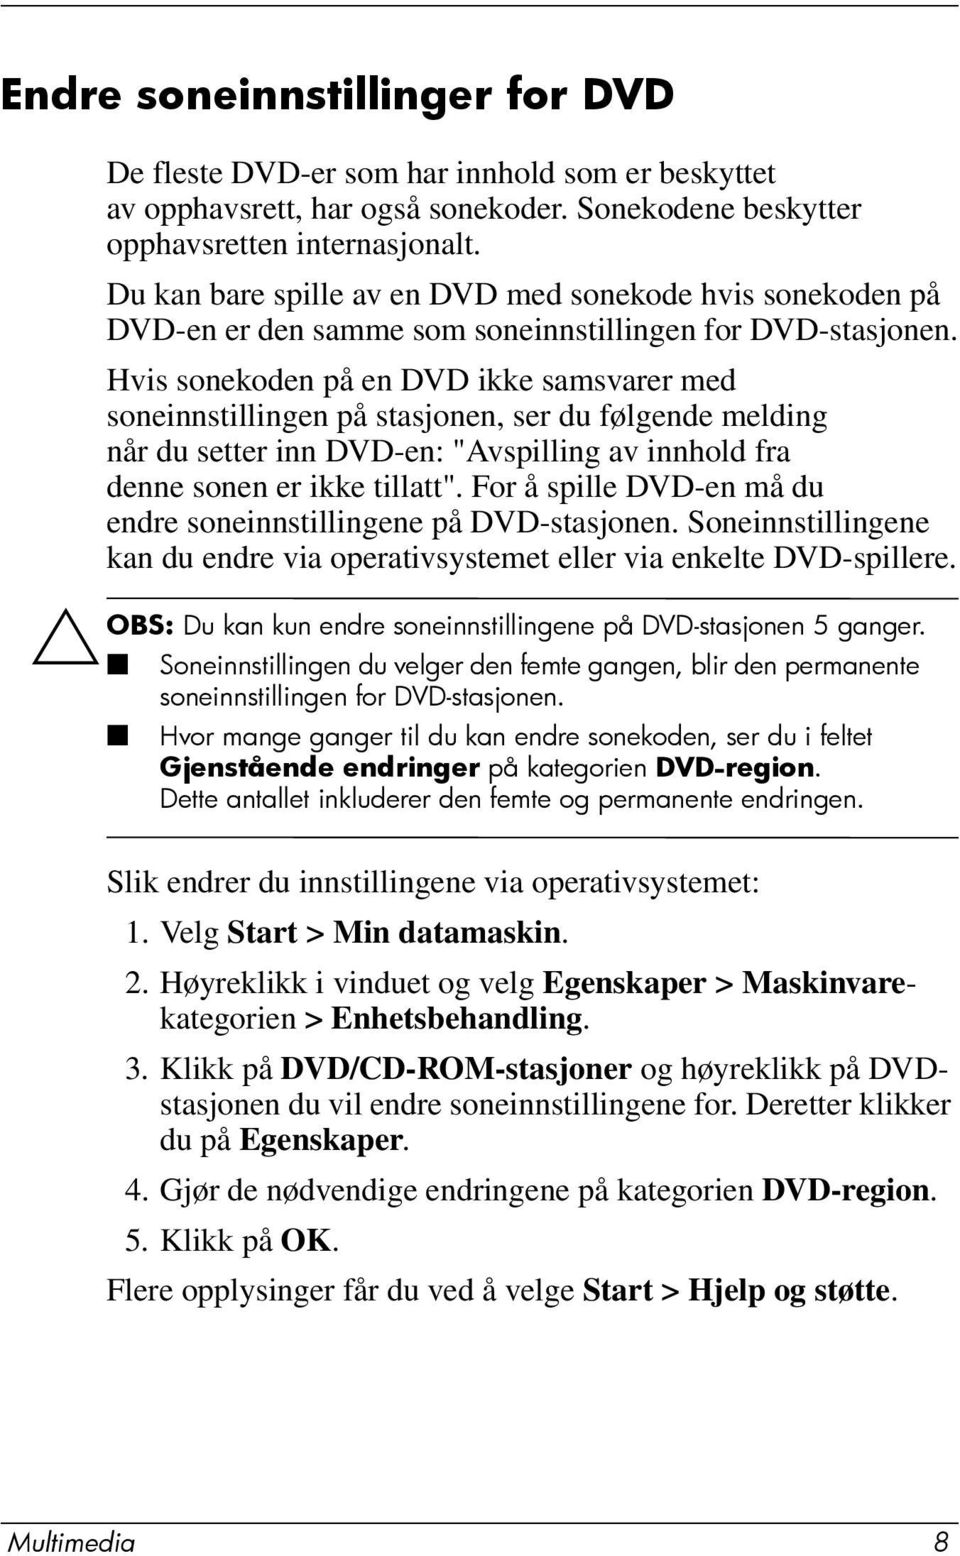 Hvis sonekoden på en DVD ikke samsvarer med soneinnstillingen på stasjonen, ser du følgende melding når du setter inn DVD-en: "Avspilling av innhold fra denne sonen er ikke tillatt".